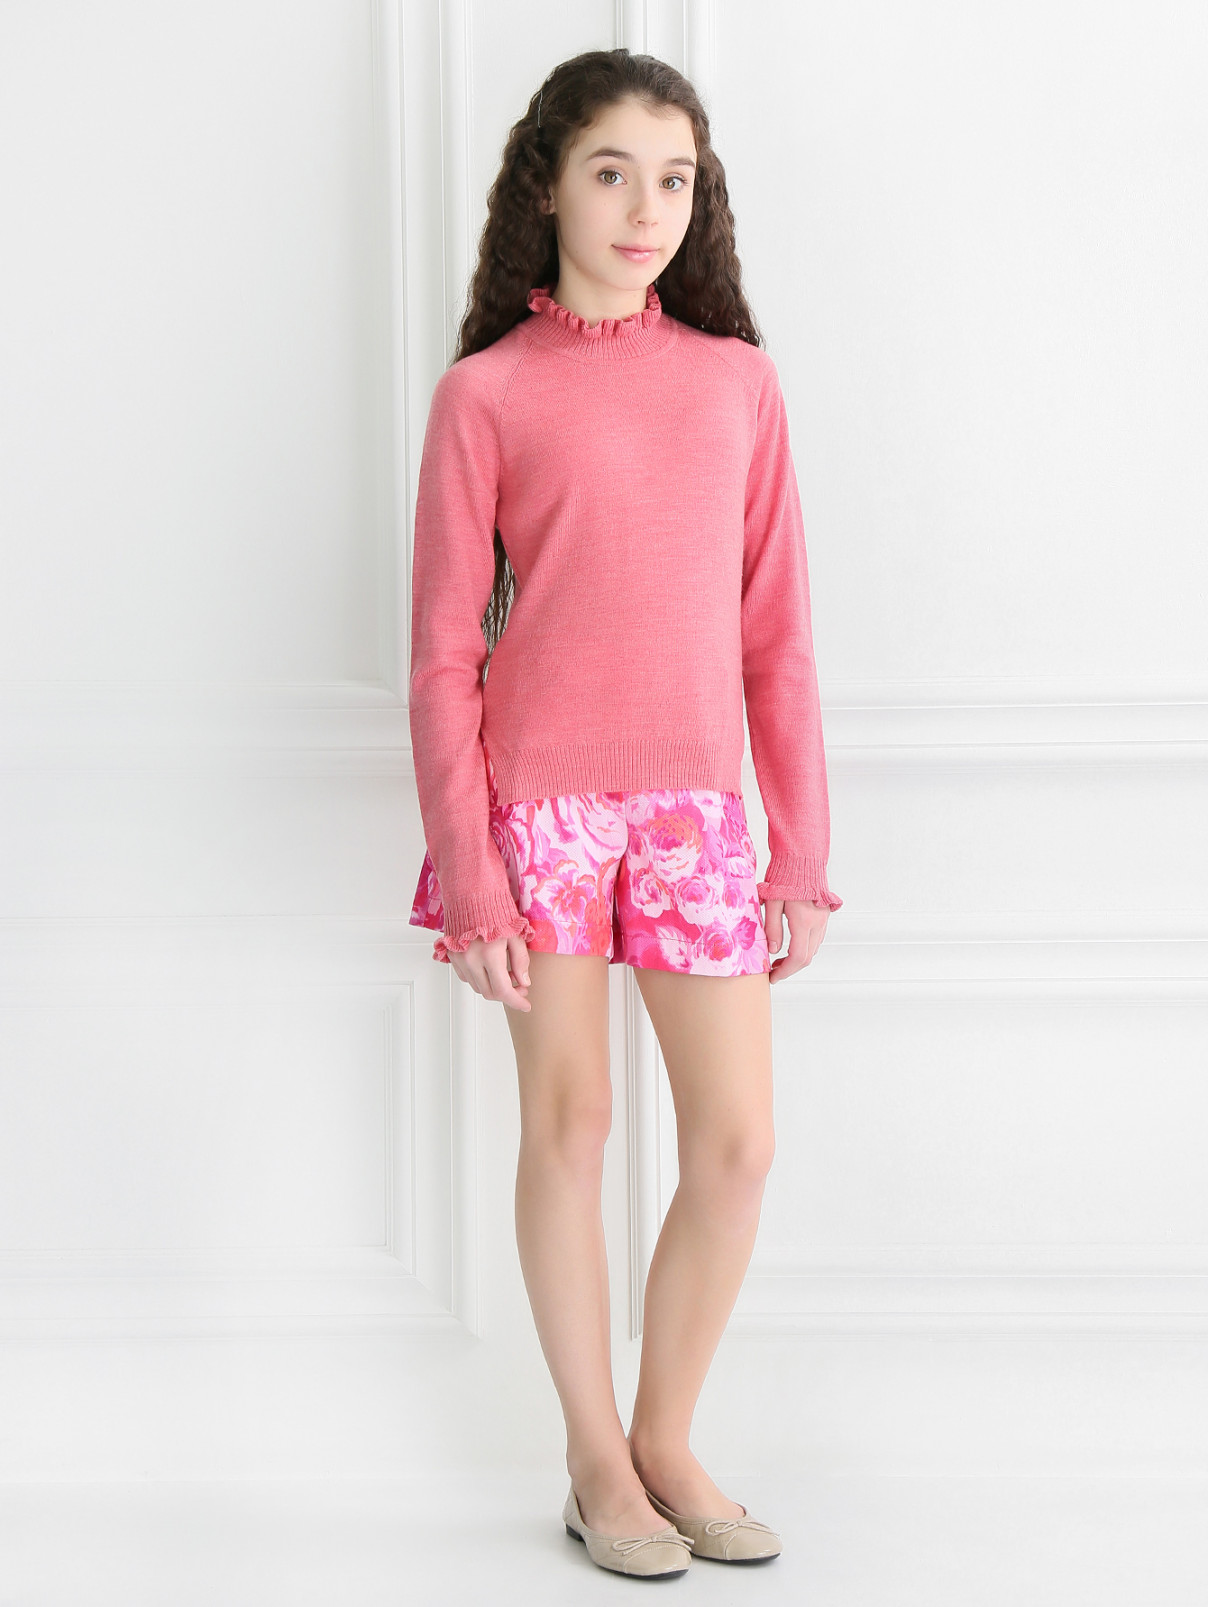 Джемпер из шерсти с оборками MiMiSol  –  Модель Общий вид  – Цвет:  Розовый